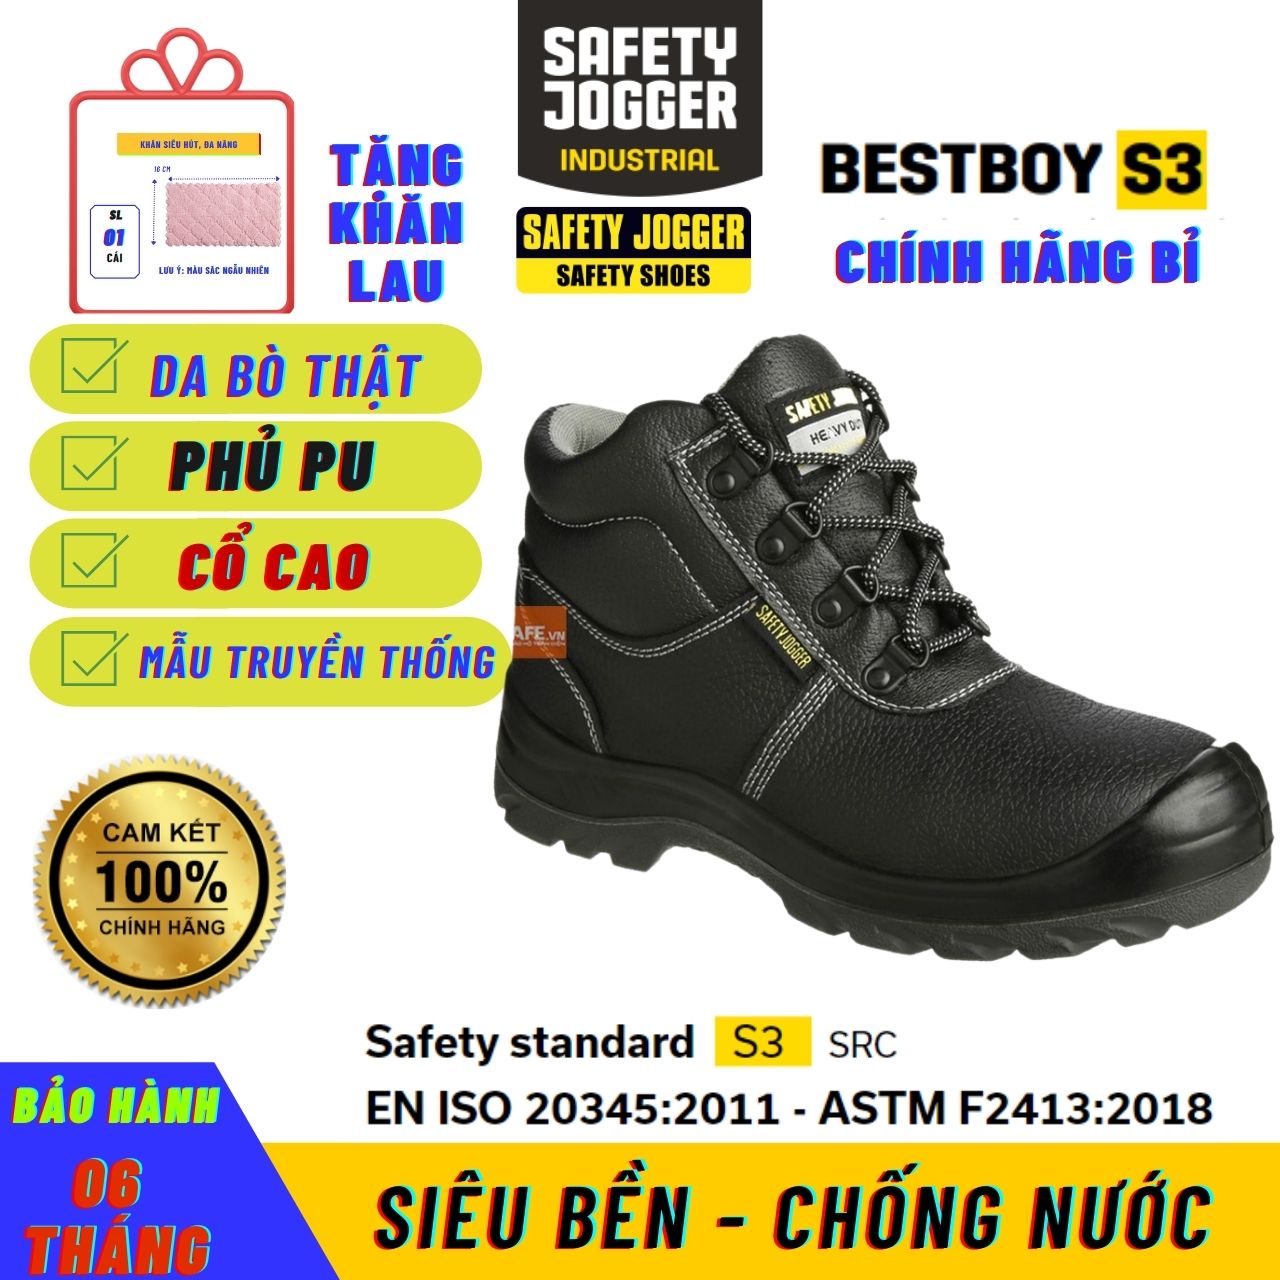 Safety Jogger BestBoy S3 Giày Bảo Hộ Chống Dầu, Nước Lao Động Chính Hãng Chống Đinh Safety Jogger Cao Cấp Cổ Cao Nam BiBoy Shop